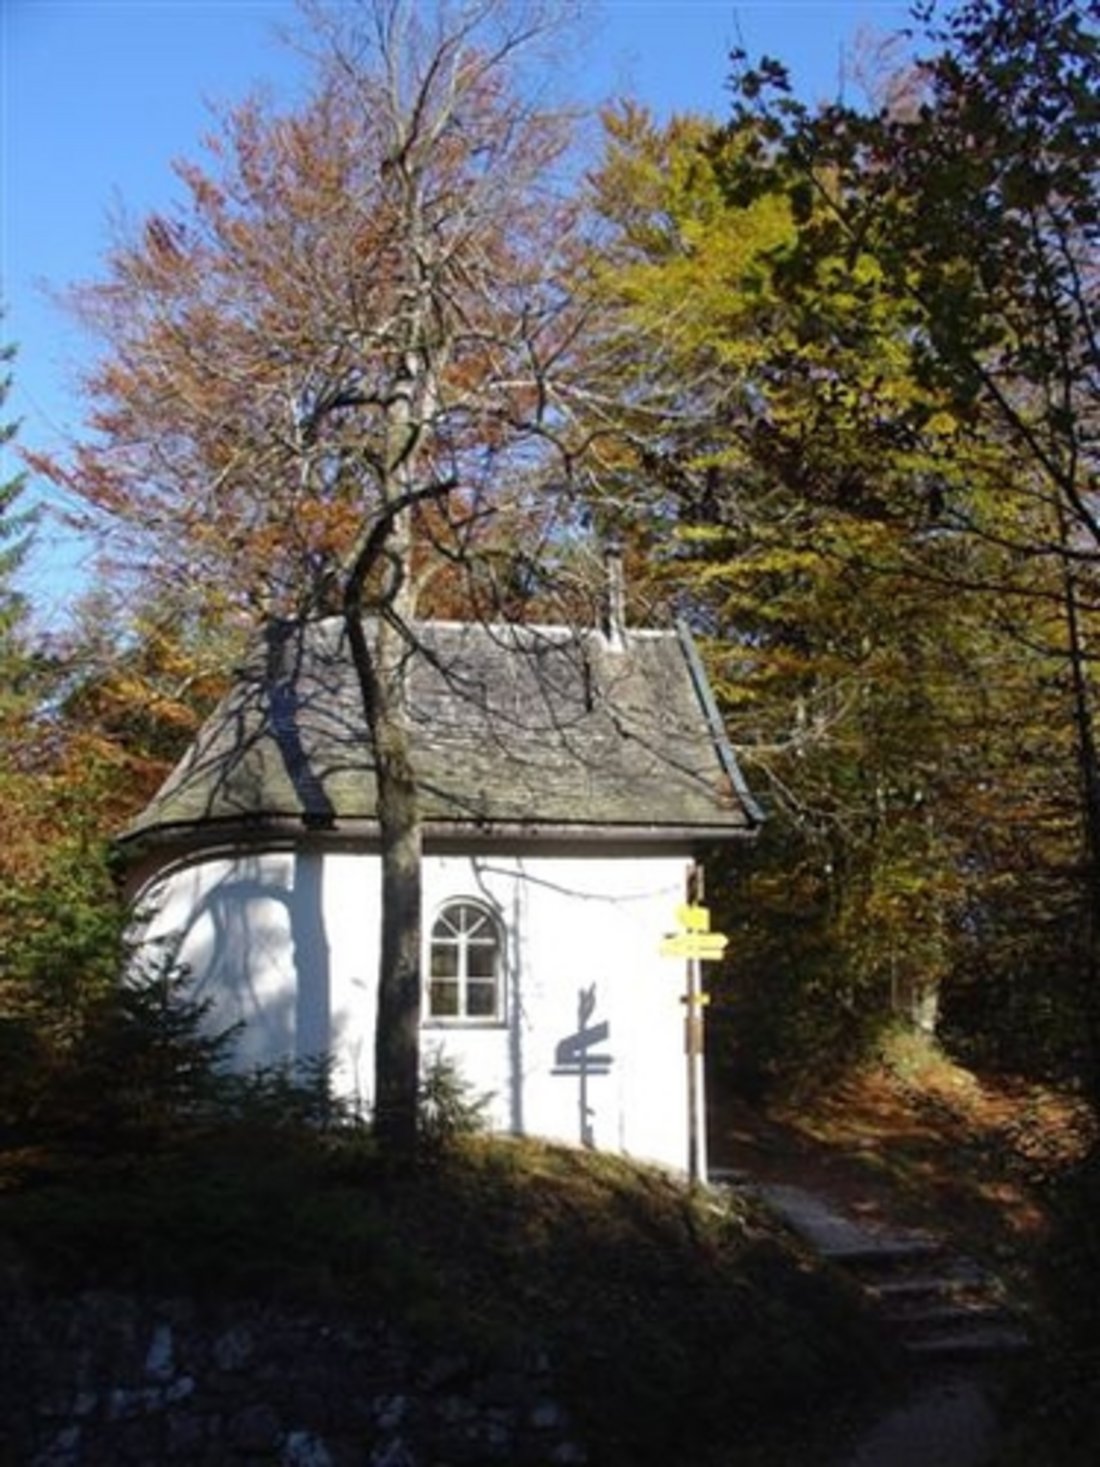 Eckkapelle in Herbstsonne